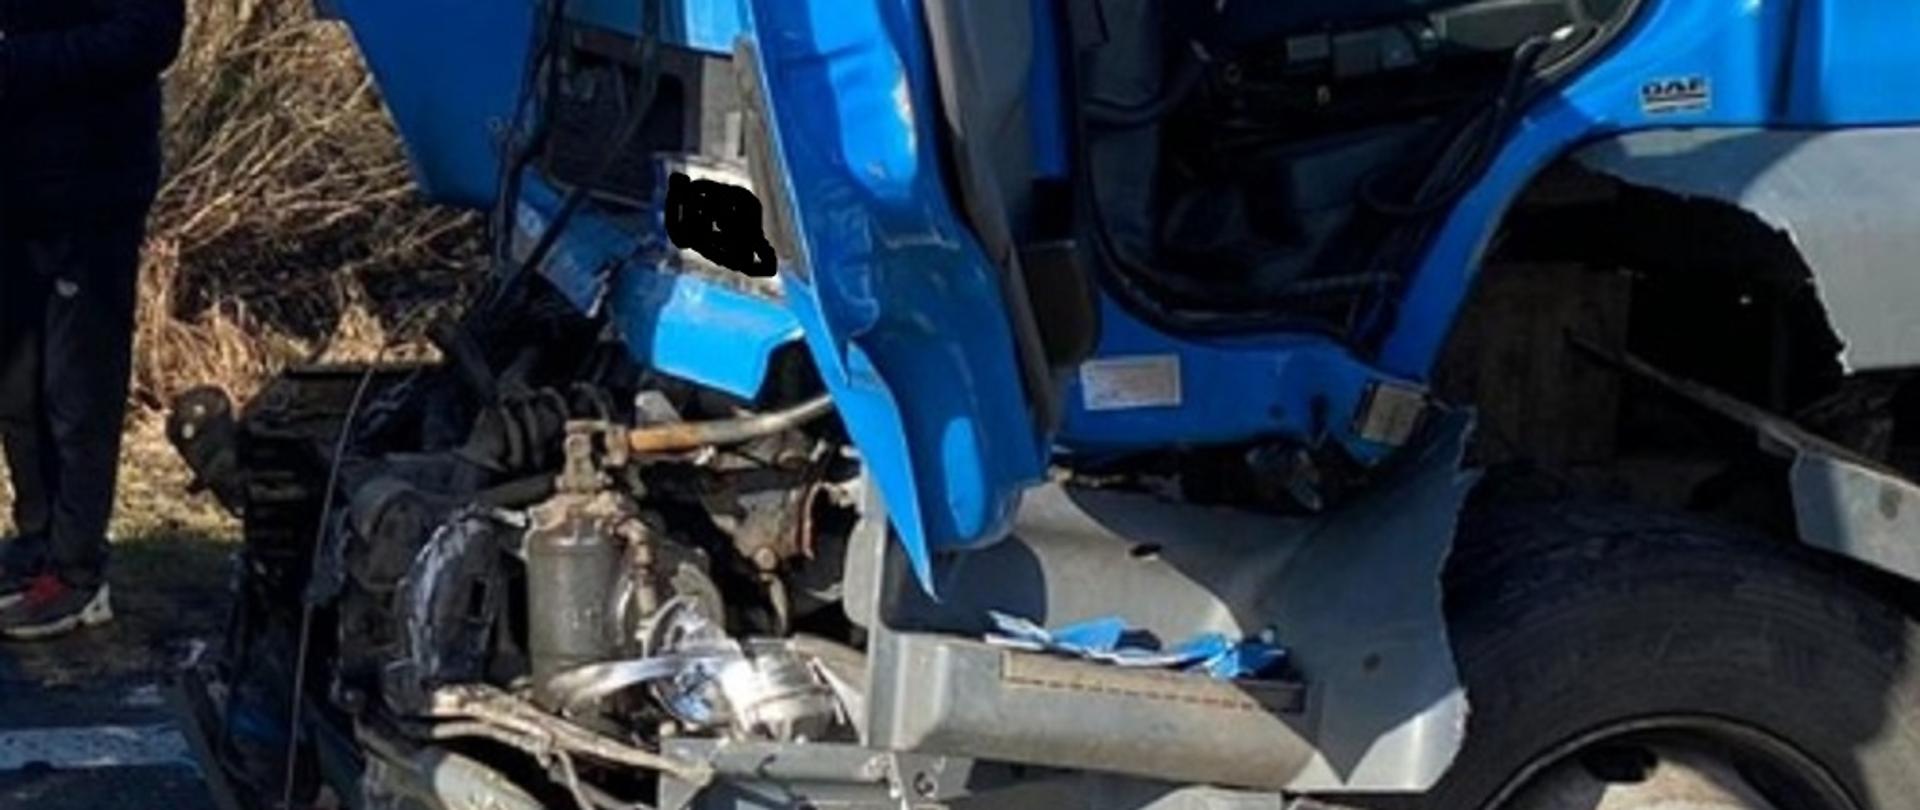 Samochód ciężarowy niebieski z uszkodzonym przodem kabiny pod wpływem zdarzenia.